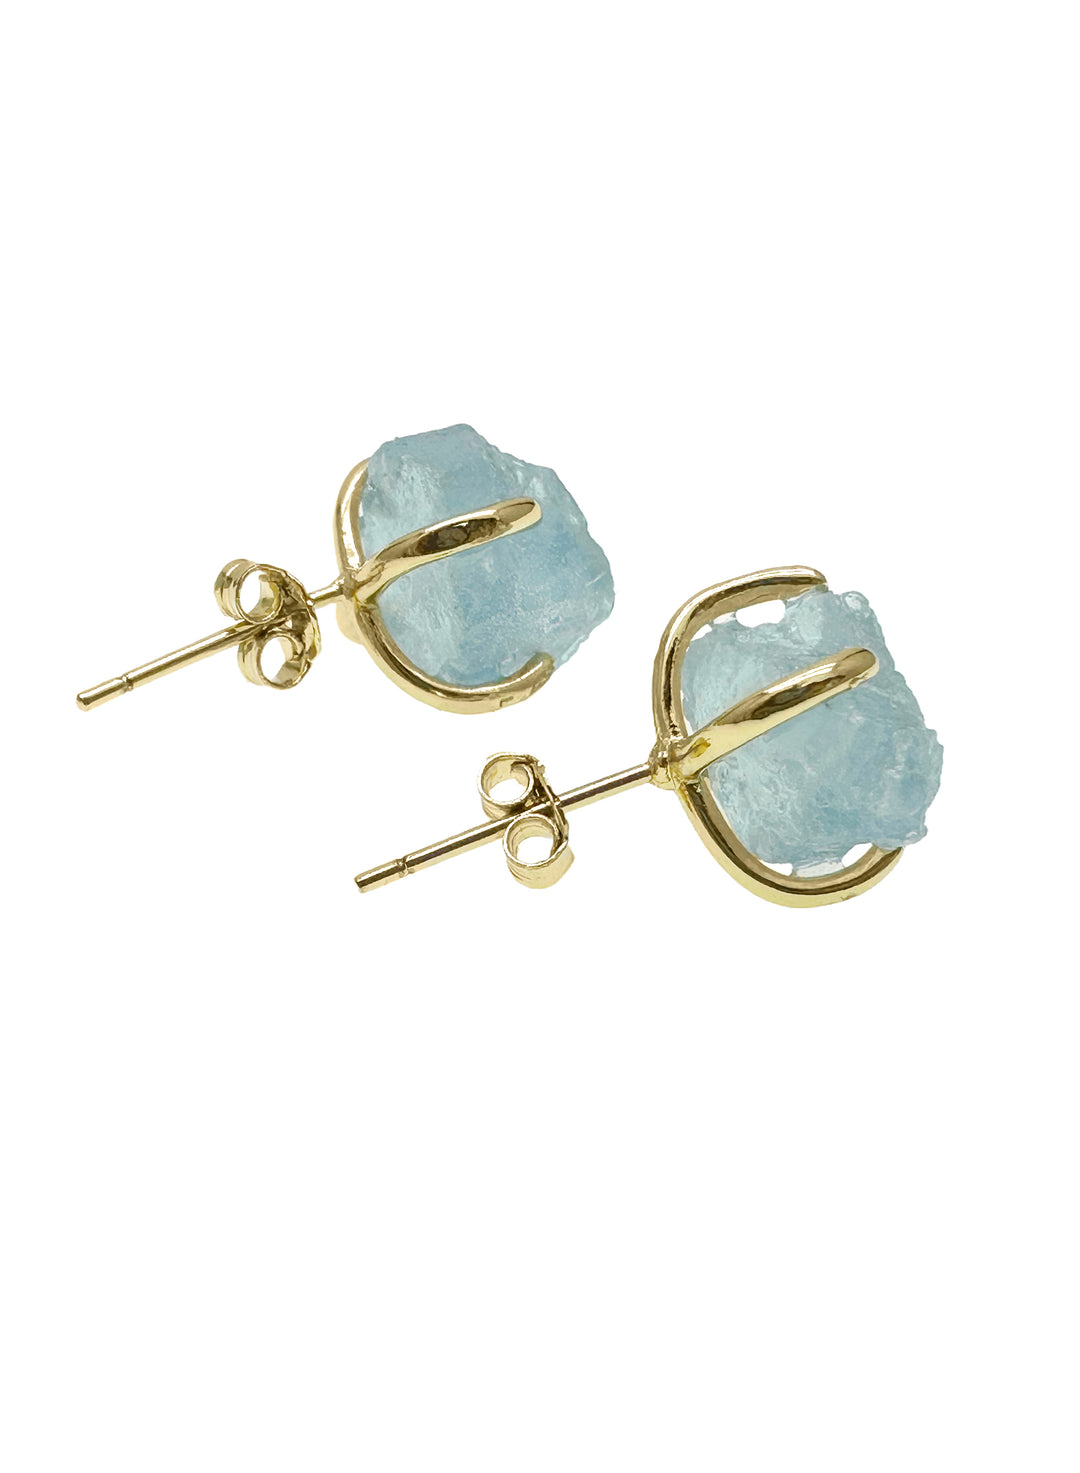 Unpolished Aquamarine Stone Stud Earrings LE018 - FARRA